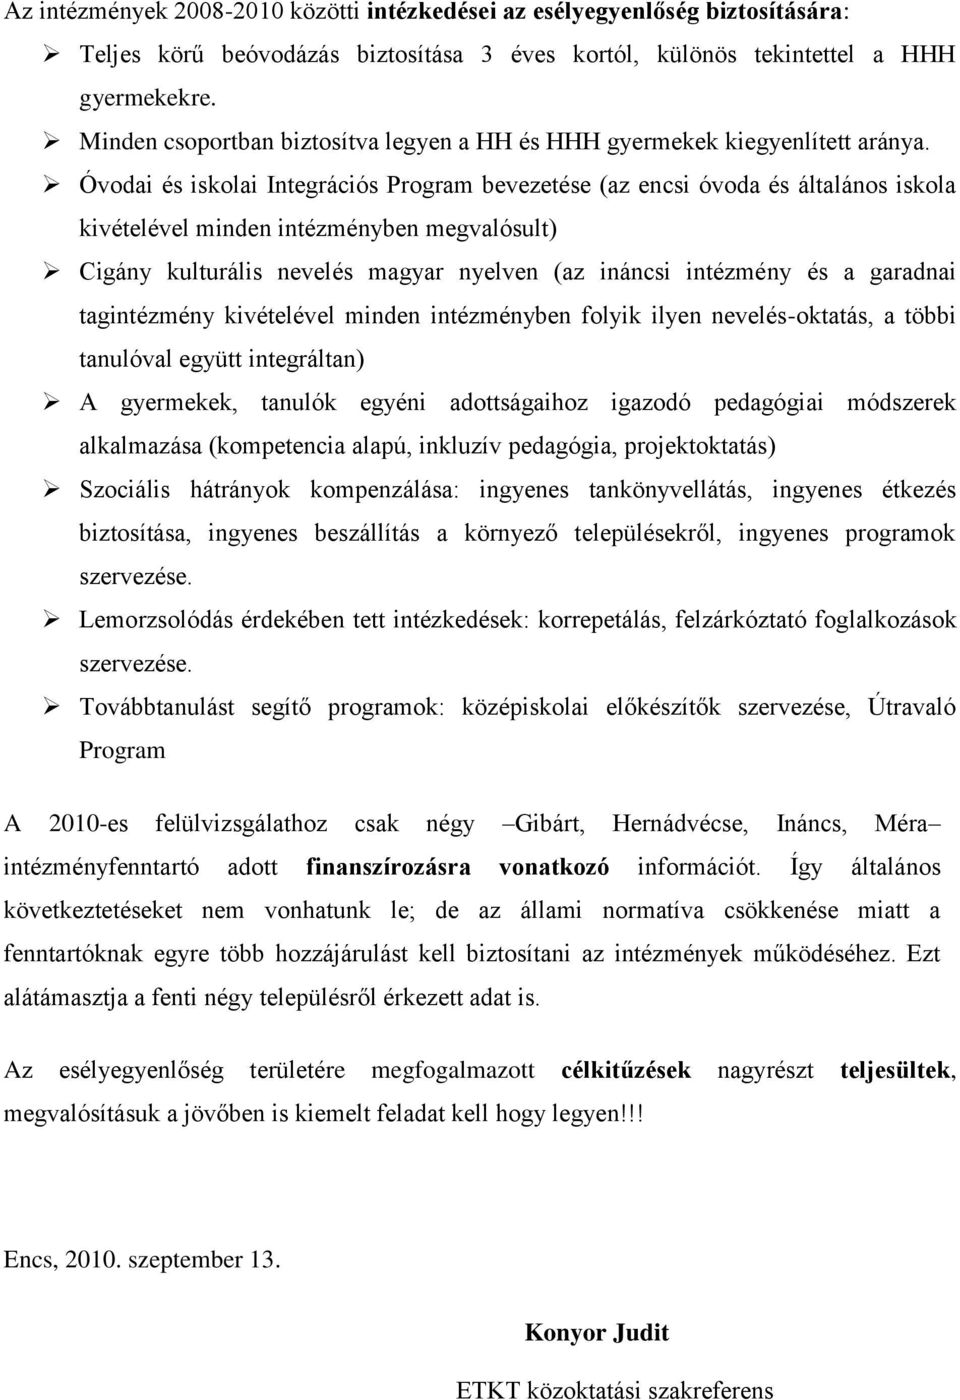 Óvodai és iskolai Integrációs Program bevezetése (az encsi óvoda és általános iskola kivételével minden intézményben megvalósult) Cigány kulturális nevelés magyar nyelven (az ináncsi intézmény és a